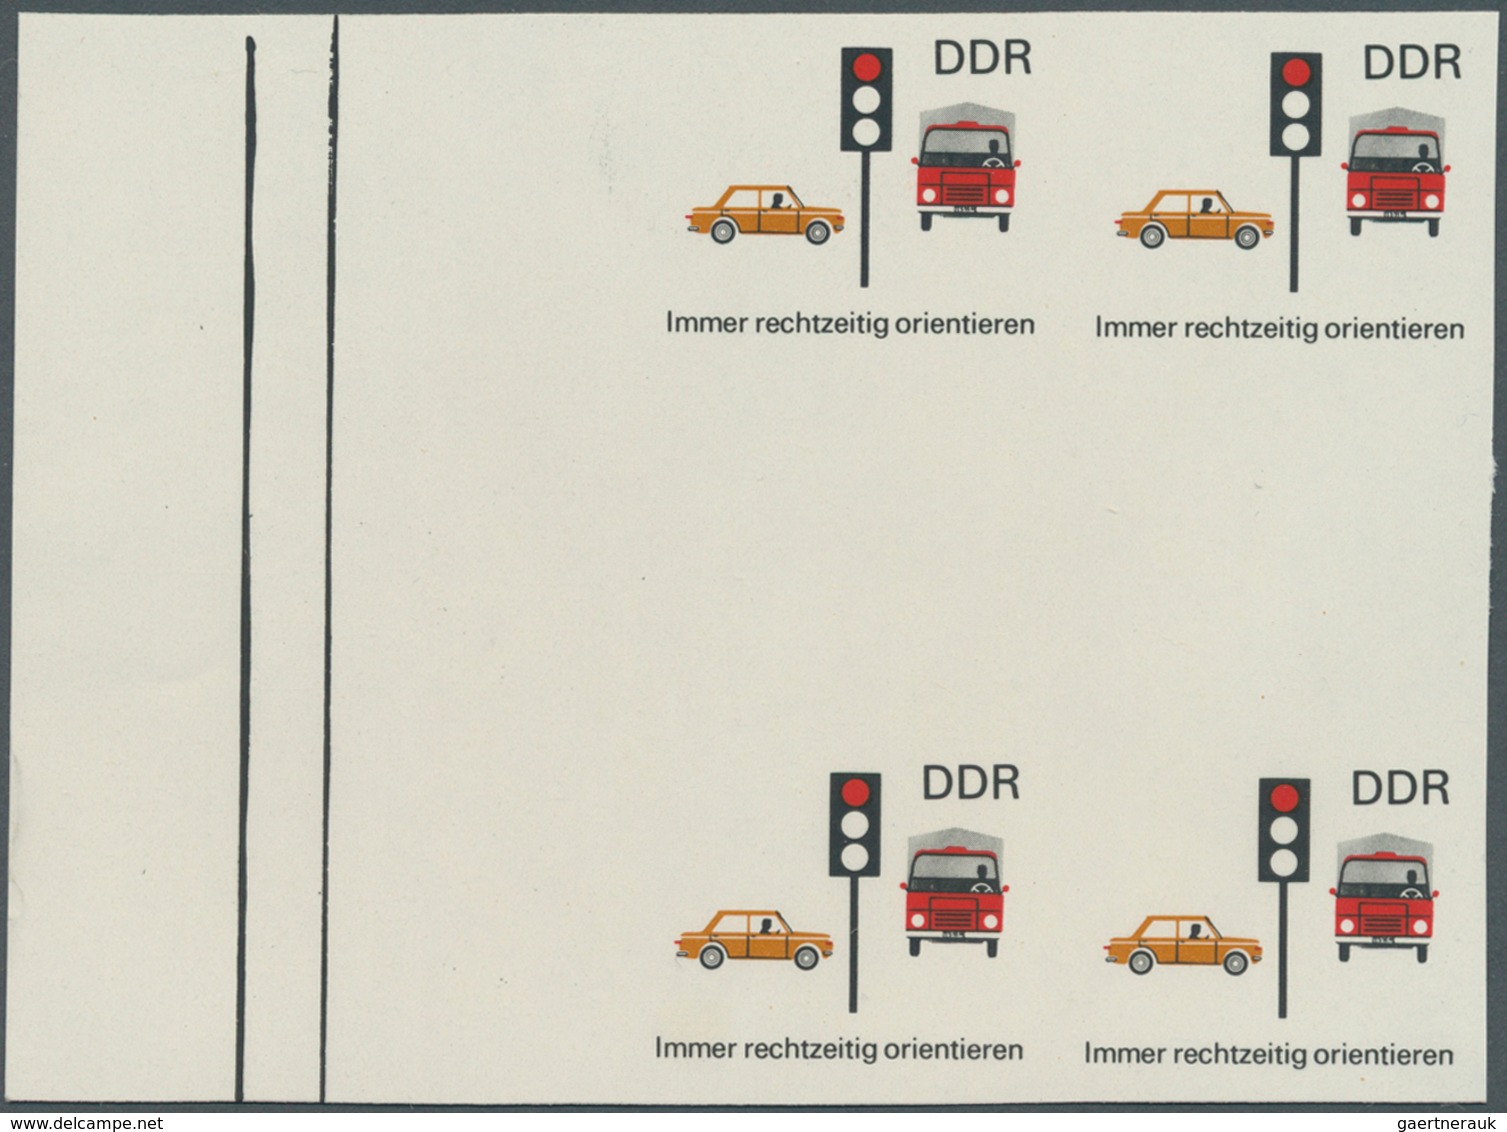 20312 DDR: 1969, Sicherheit im Straßenverkehr 10 Pf. 'Immer rechtzeitig orientieren (Ampel)' in 6 verschie